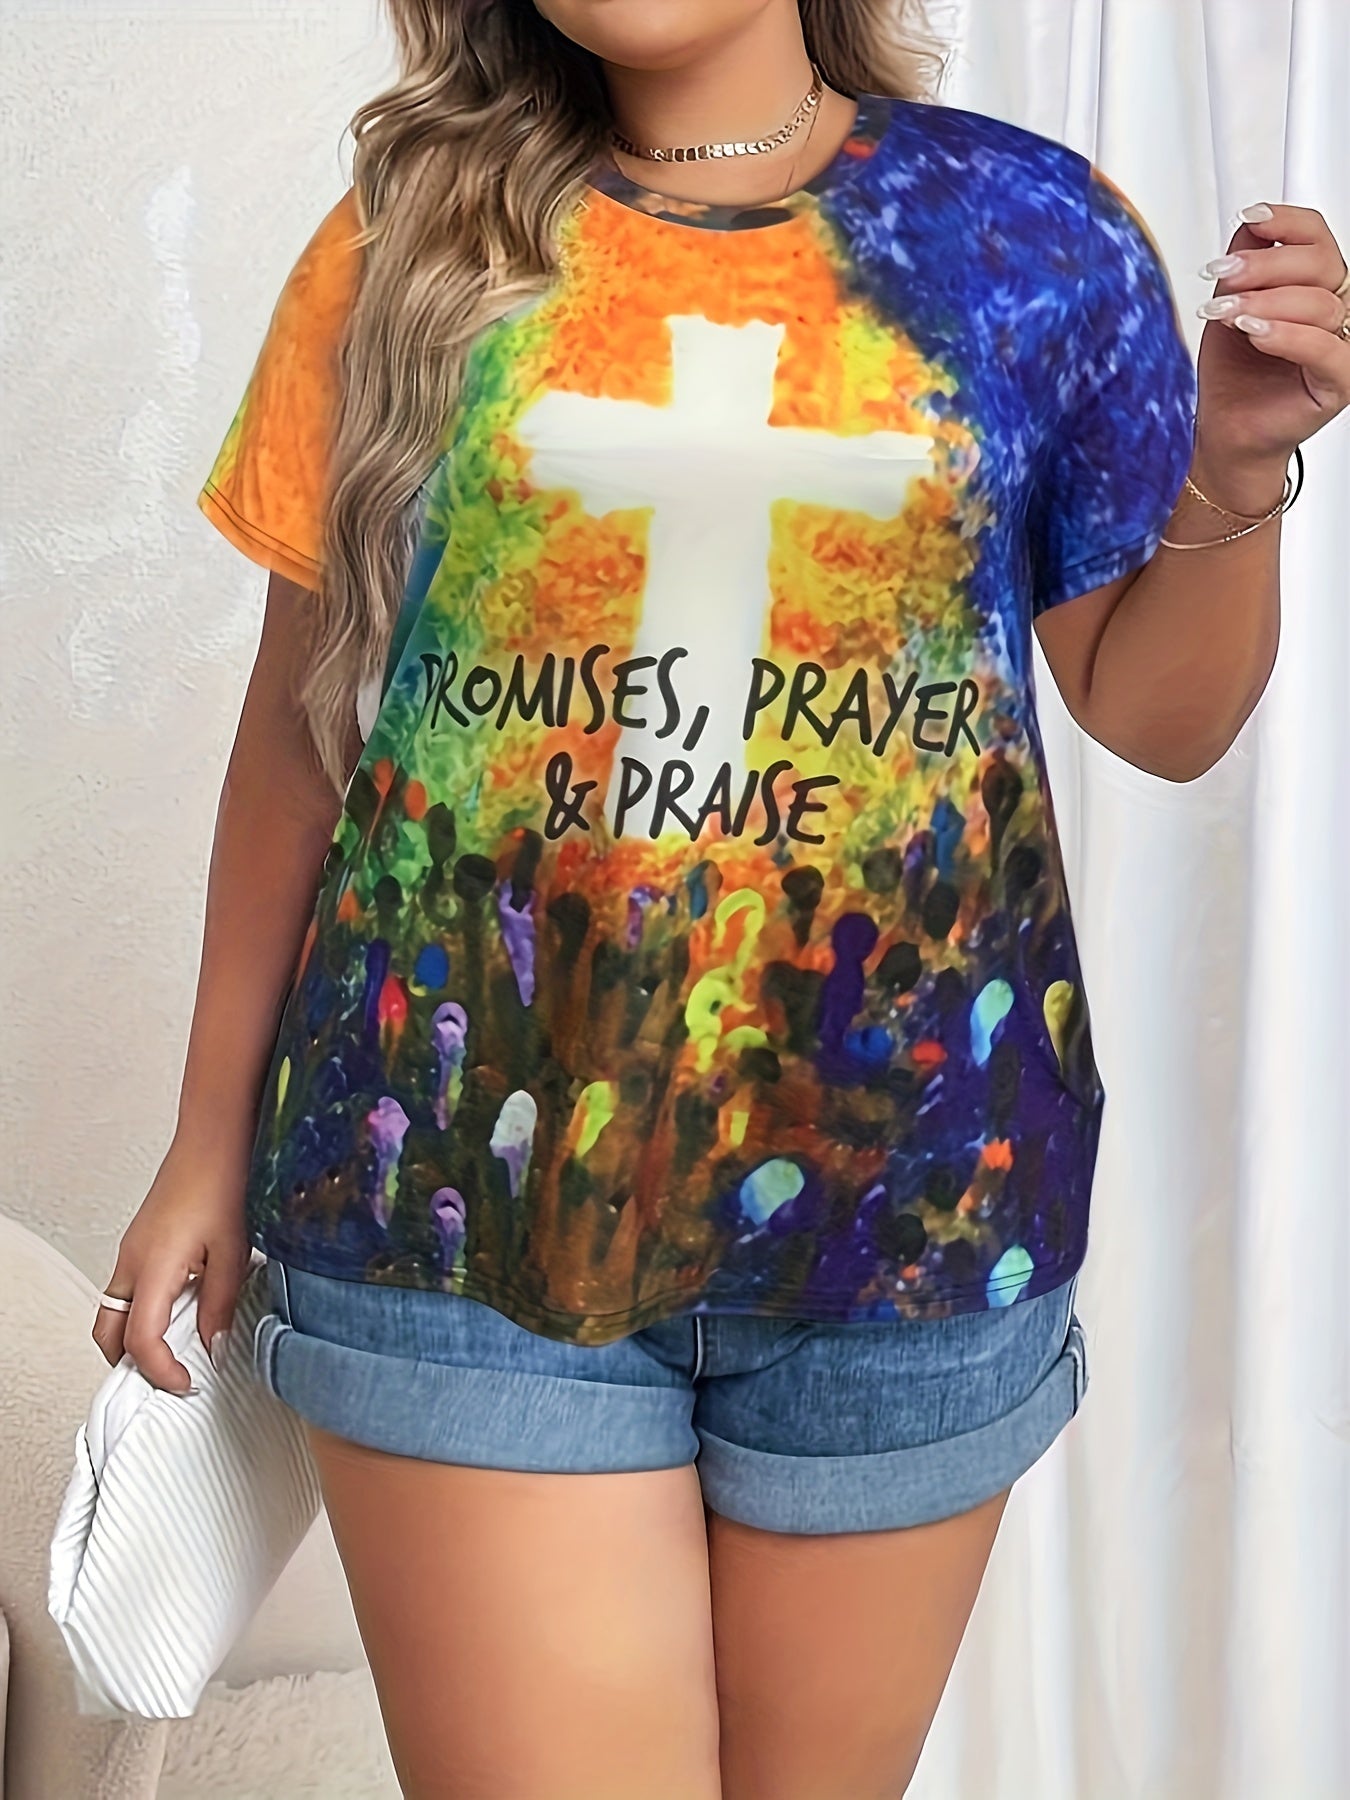 Promises Prayer & Praise Plus Size Women's Christian T-shirt claimedbygoddesigns